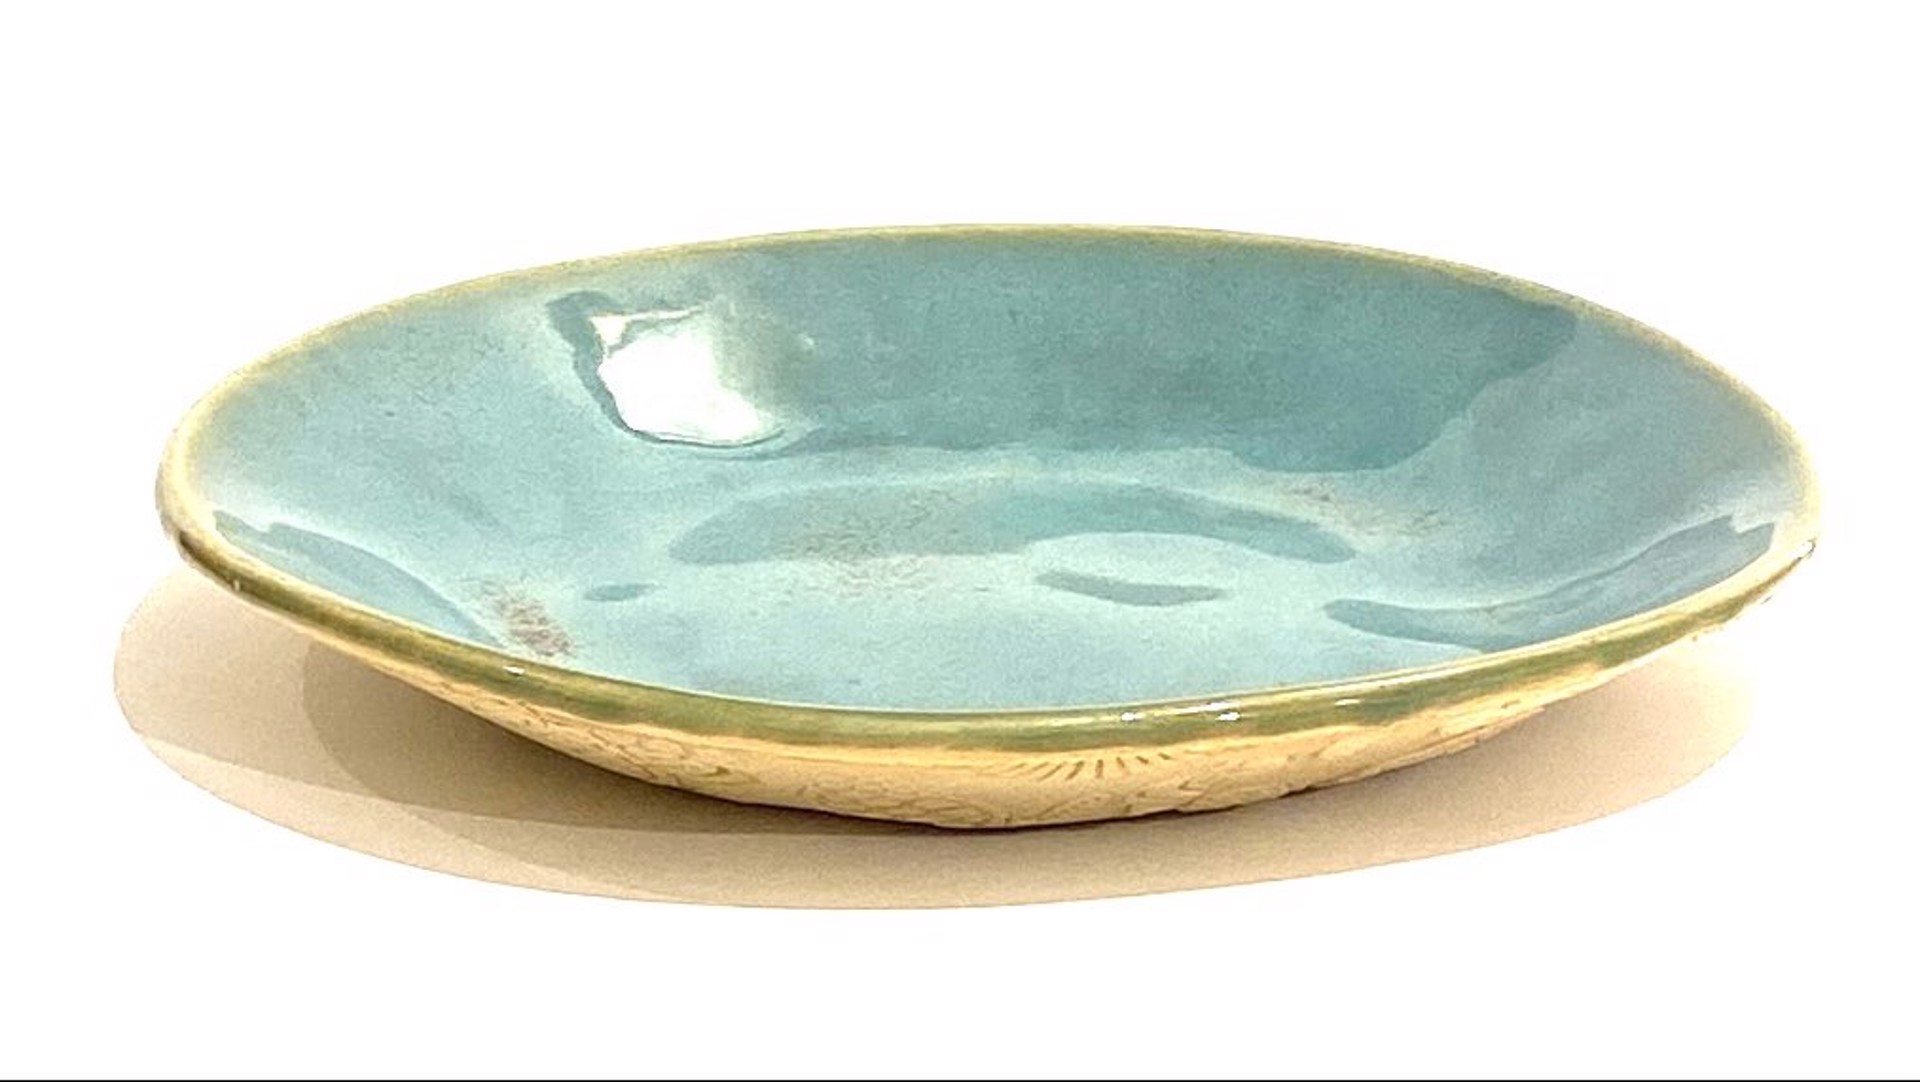 Embossed Plate, Teal Glazed Top, Turtle Design Underside by Barbara Bergwerf, Ceramics